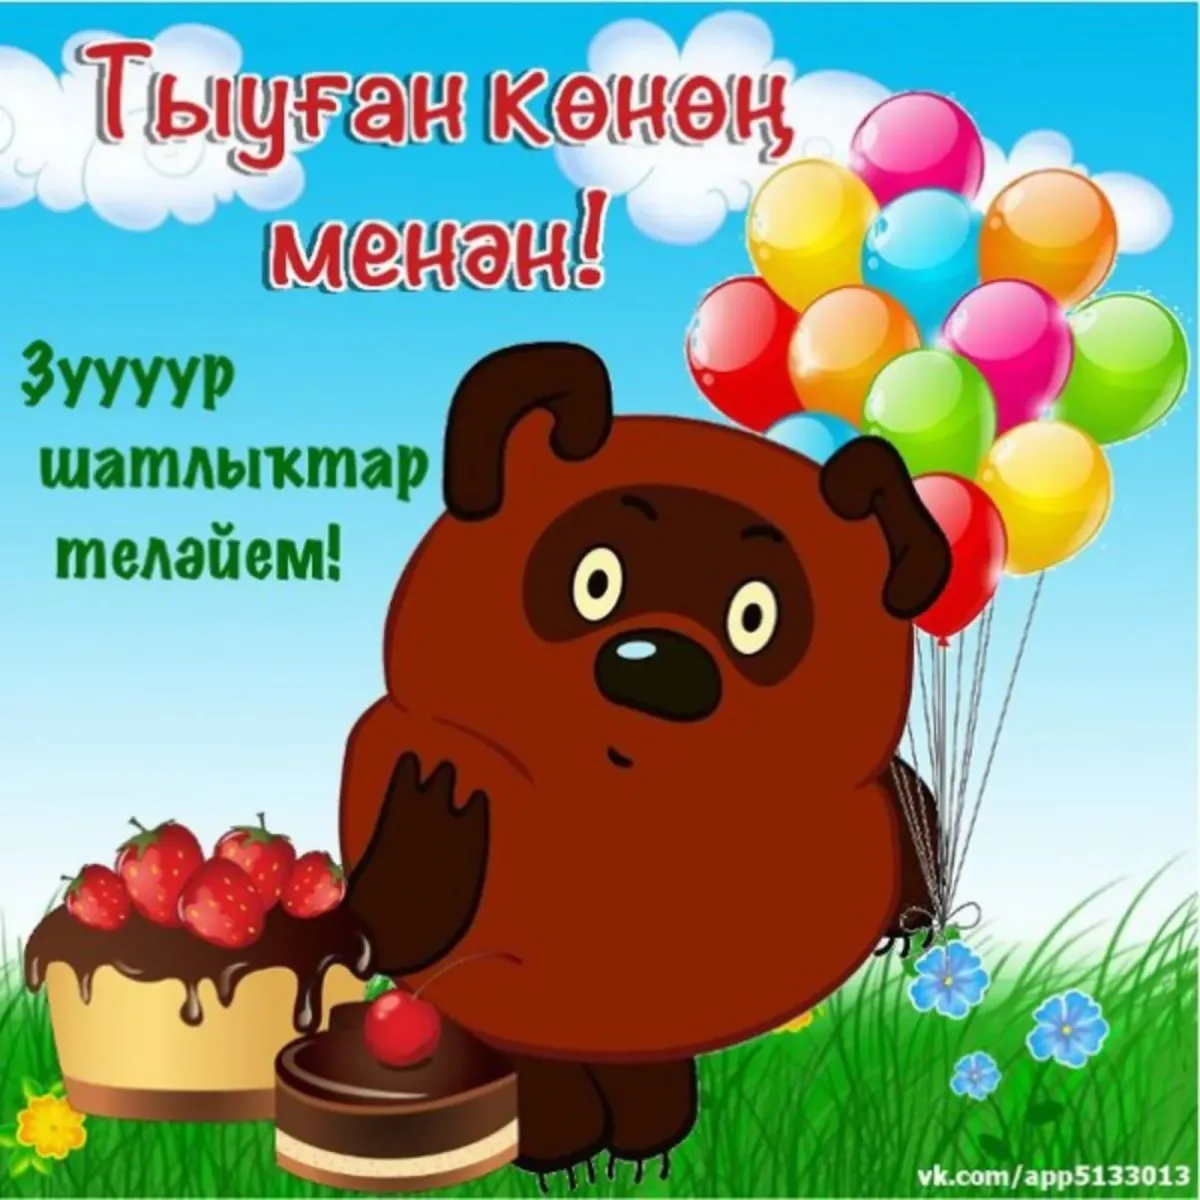 Башкирские пожелания на день рождения. Поздравления с днём рождения на башкирском языке. Поздравления с днём рождения мужчине на башкирском языке. Поздравление с юбилеем на башкирском языке.